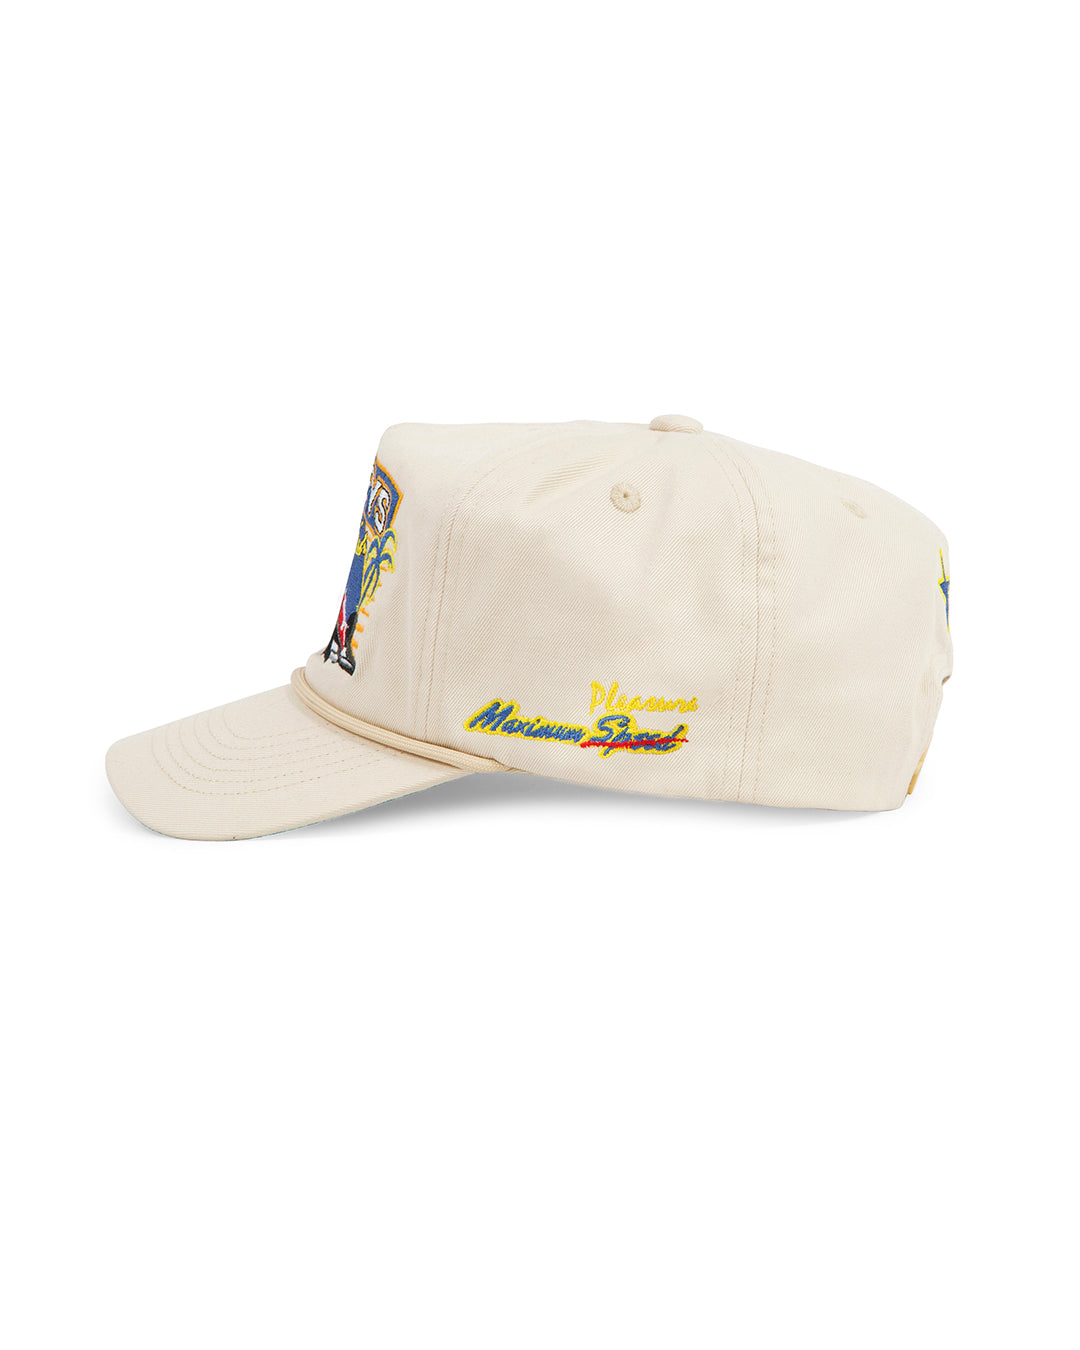 Miami Cream Racing Cap